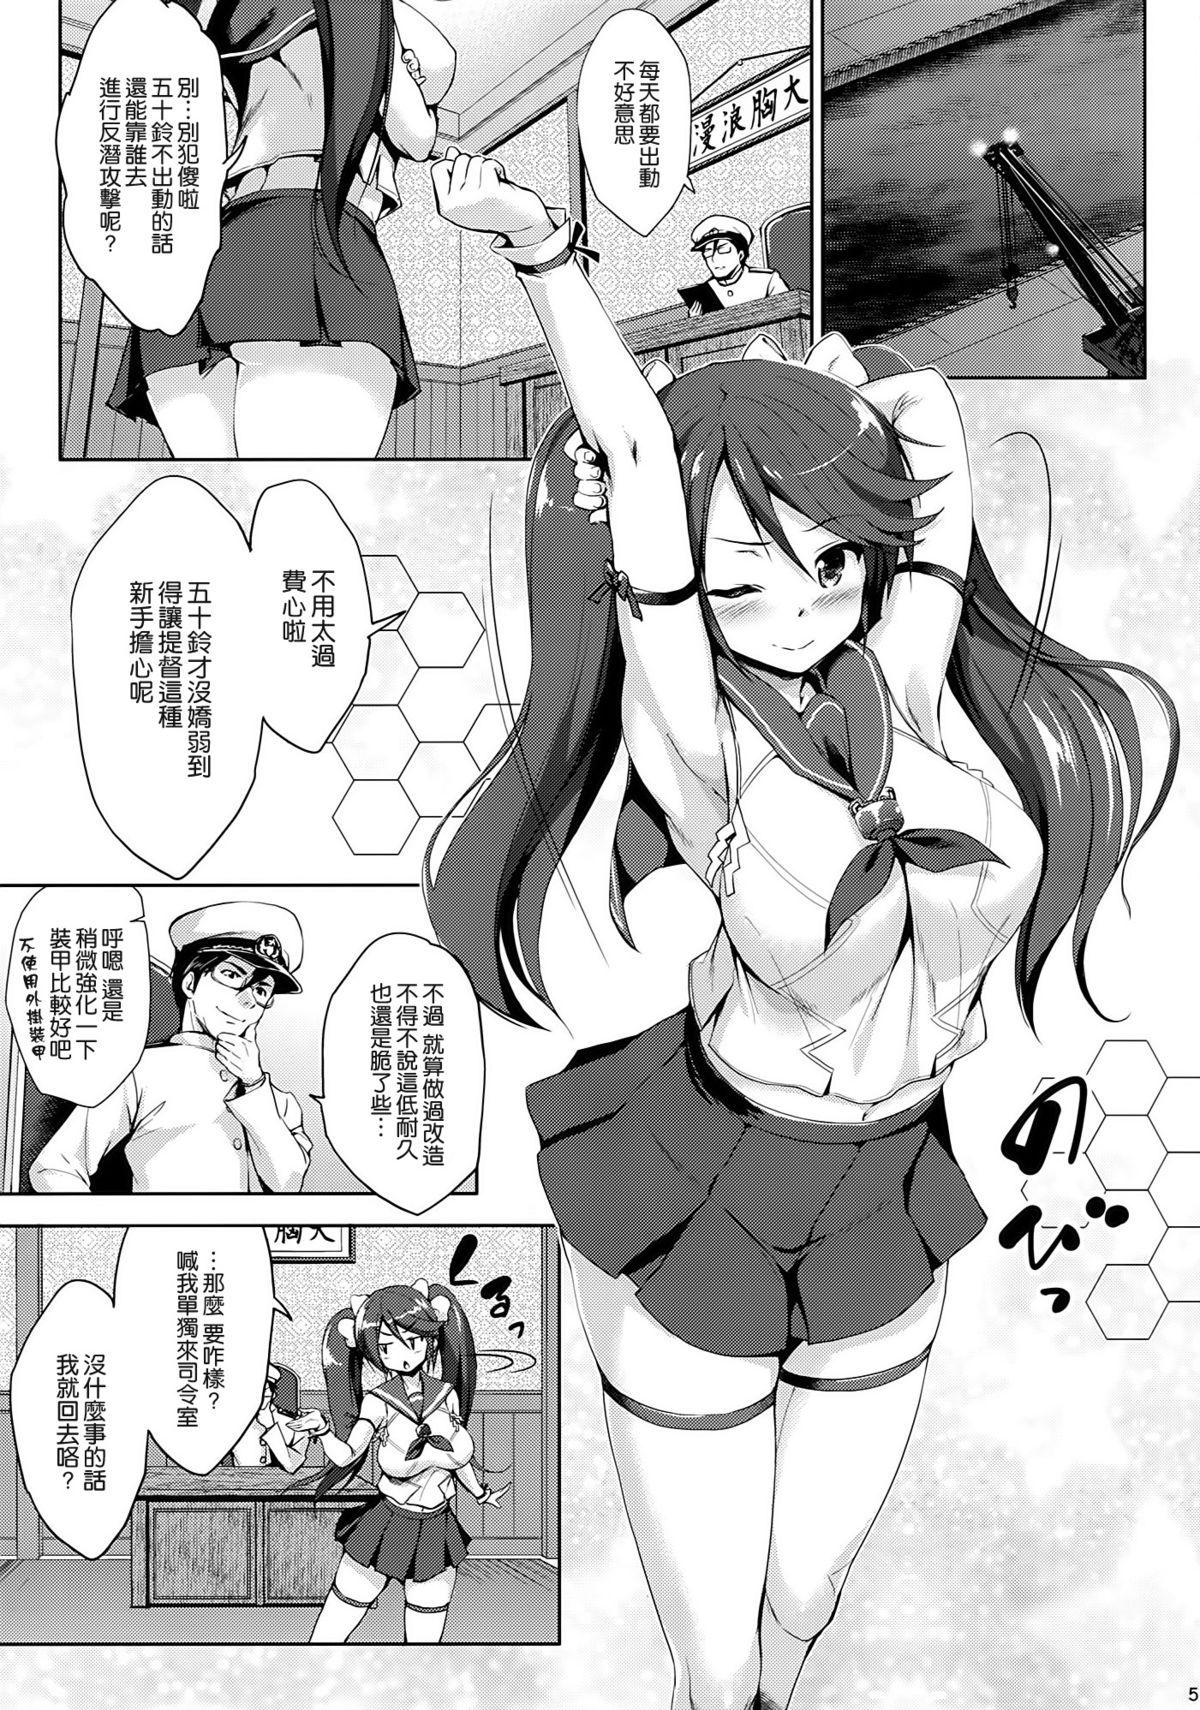 Curious 五十鈴育乳日誌 - Kantai collection Ass Sex - Page 4